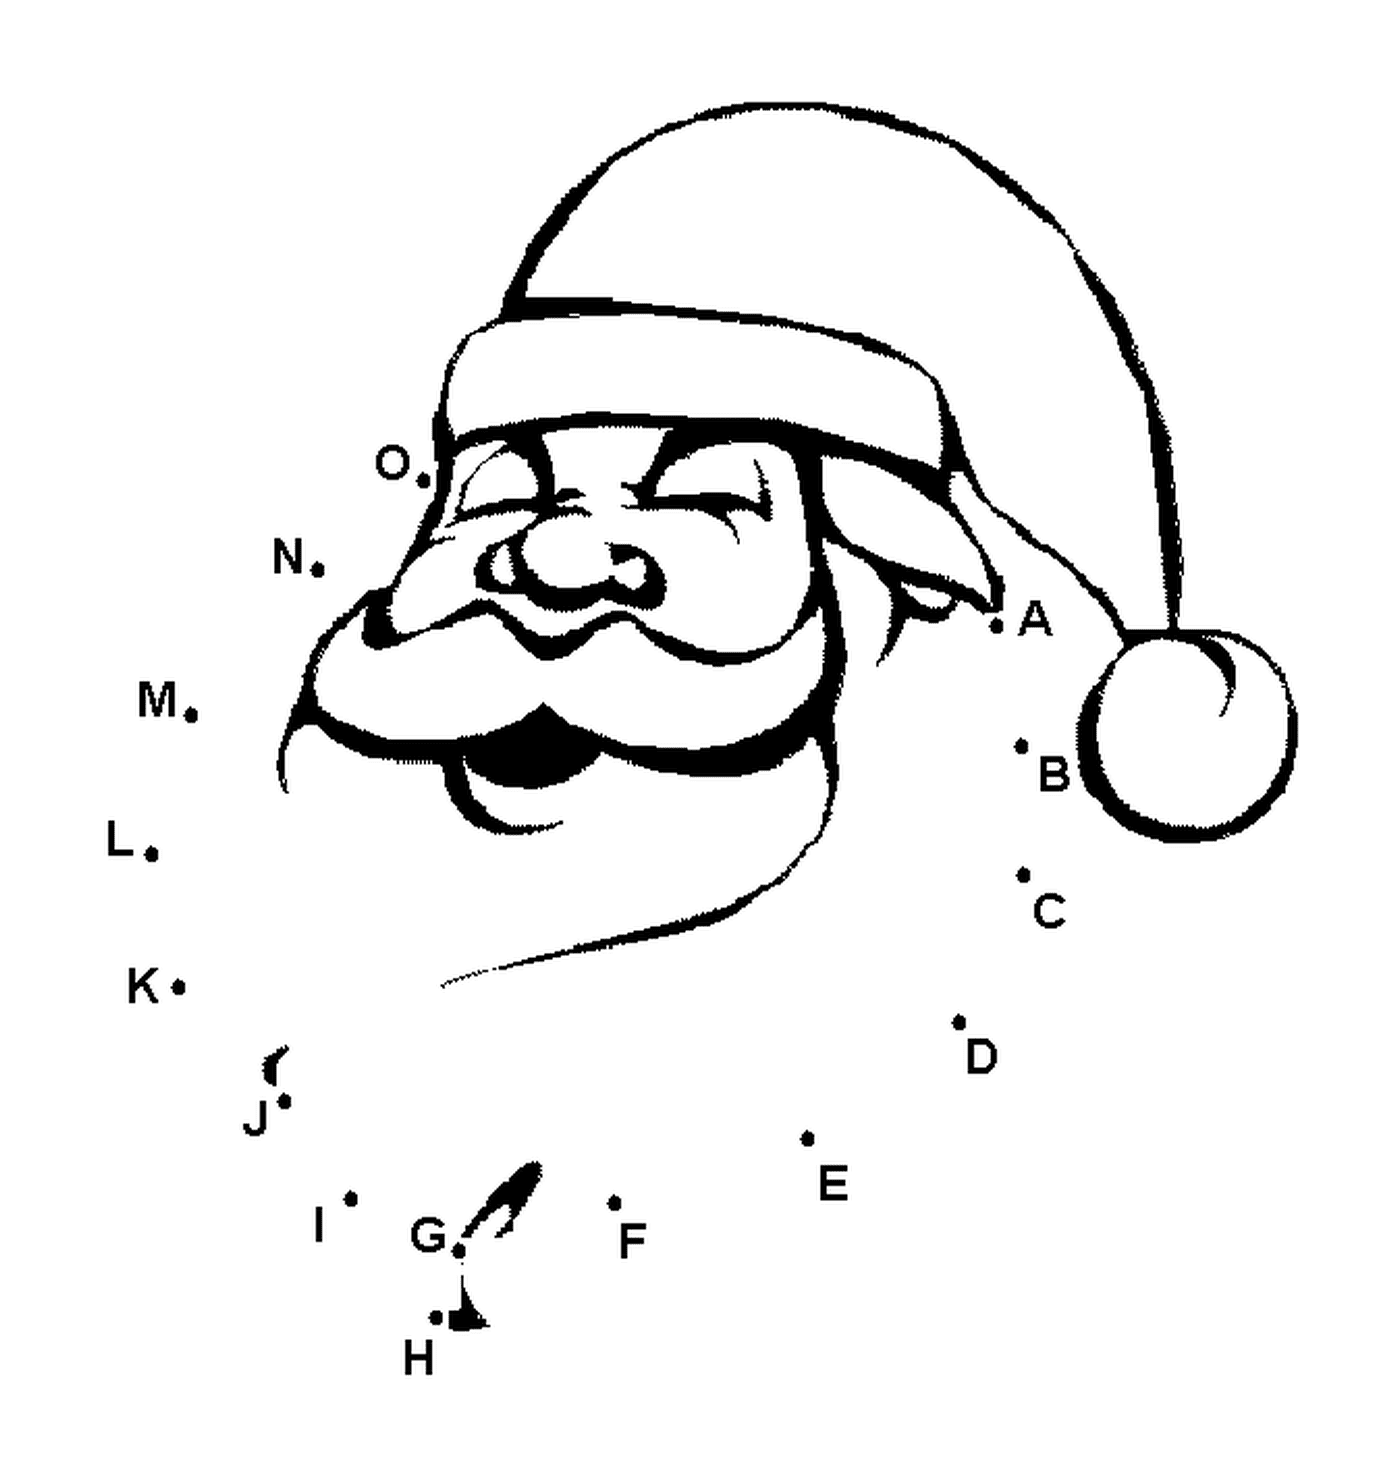  Kopf des Weihnachtsmanns 